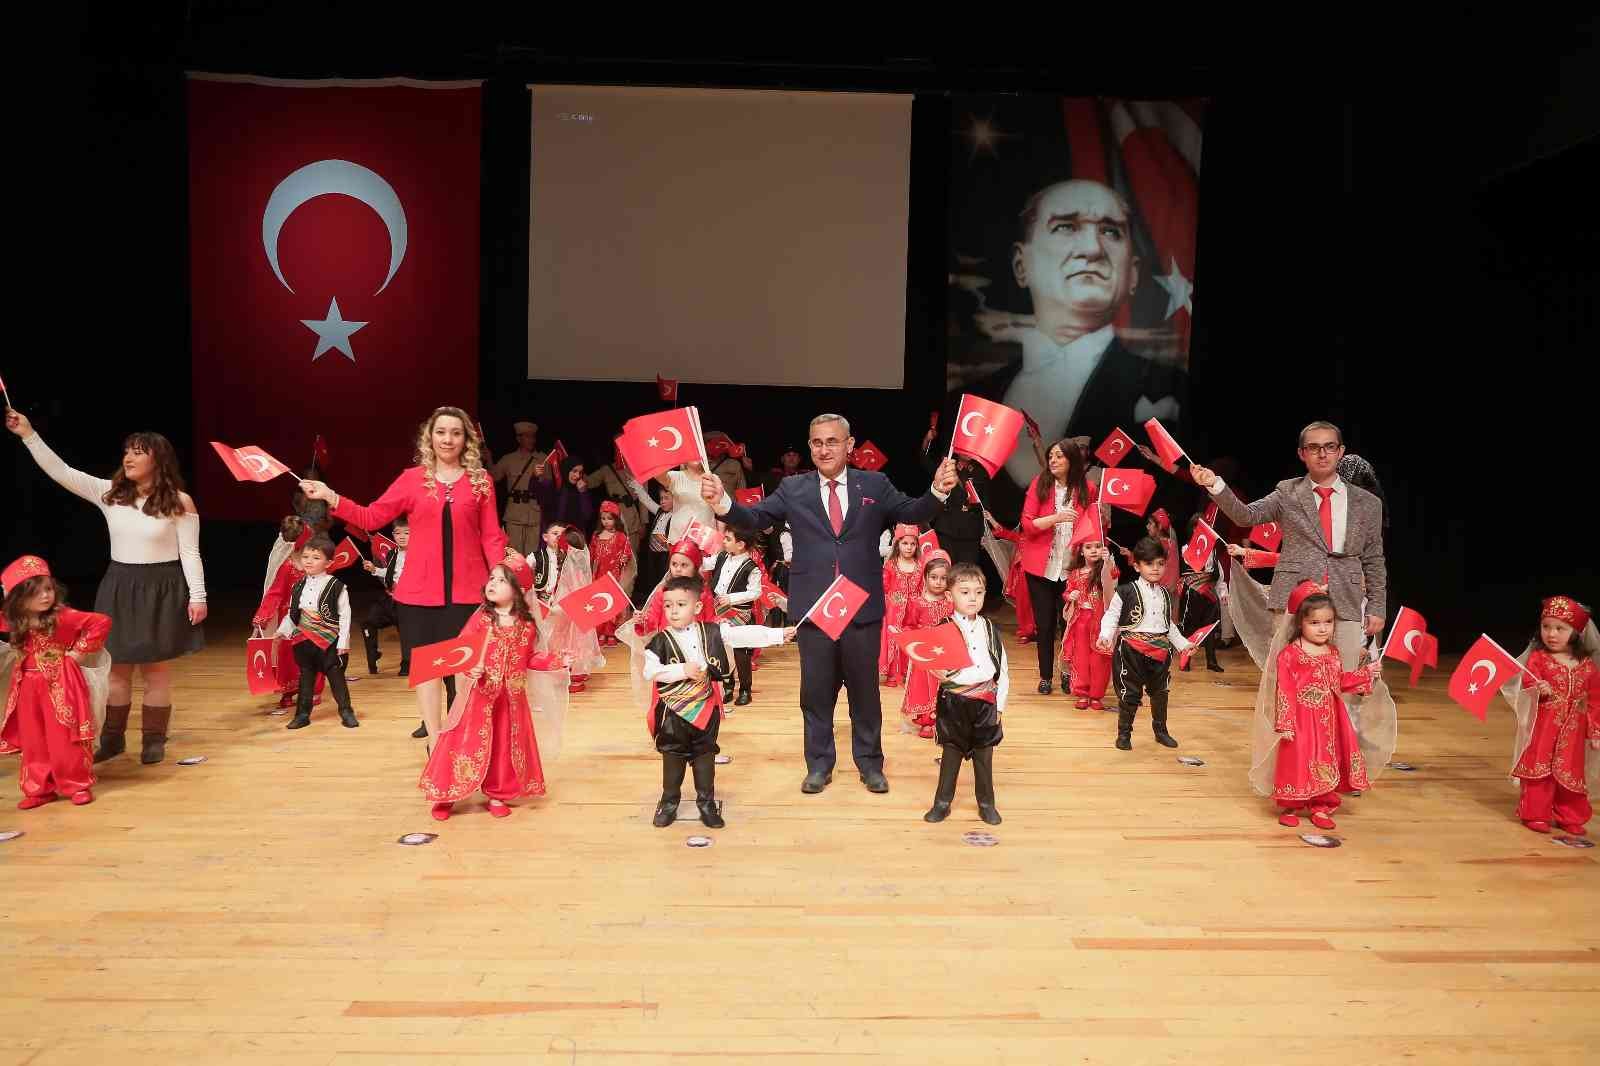 Başkan Alim Işık: “Bağımsızlığın ne demek olduğunu en iyi Türk milleti bilir”